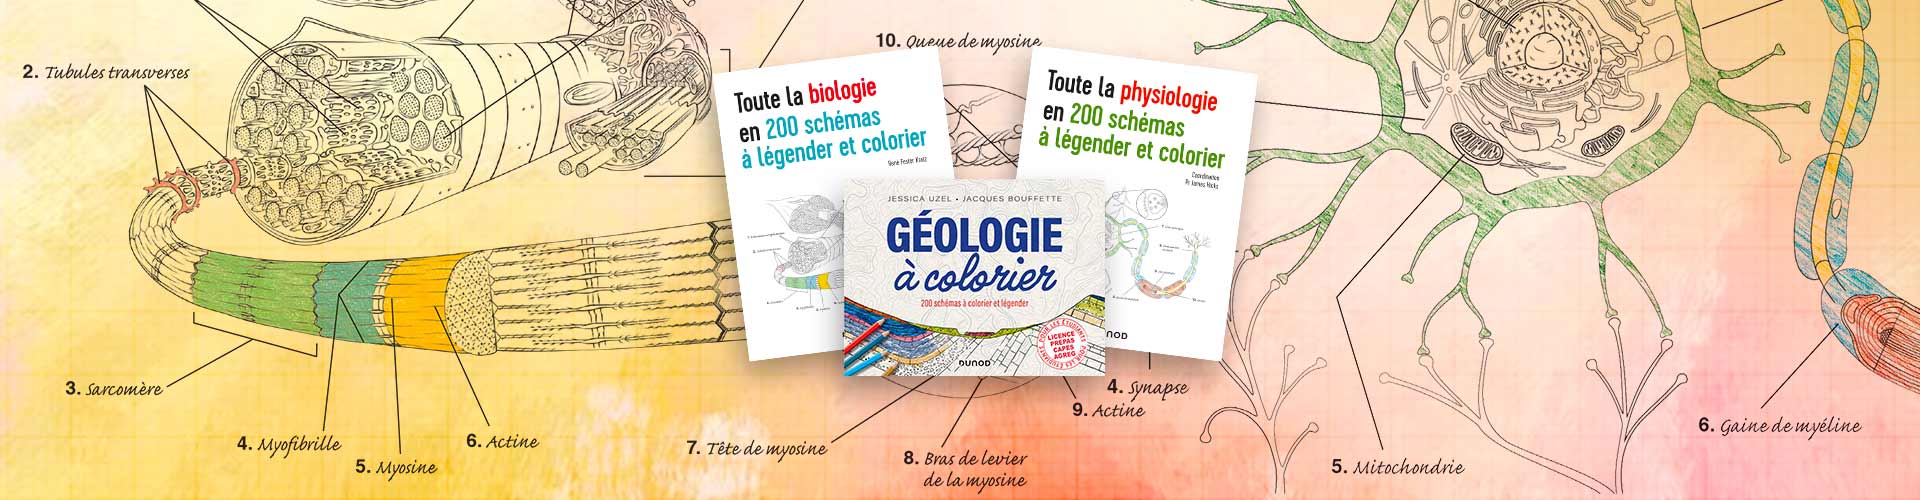 Biologie, physiologie, Géologie, 200 schémas à légender et colorier  pour un apprentissage actif 